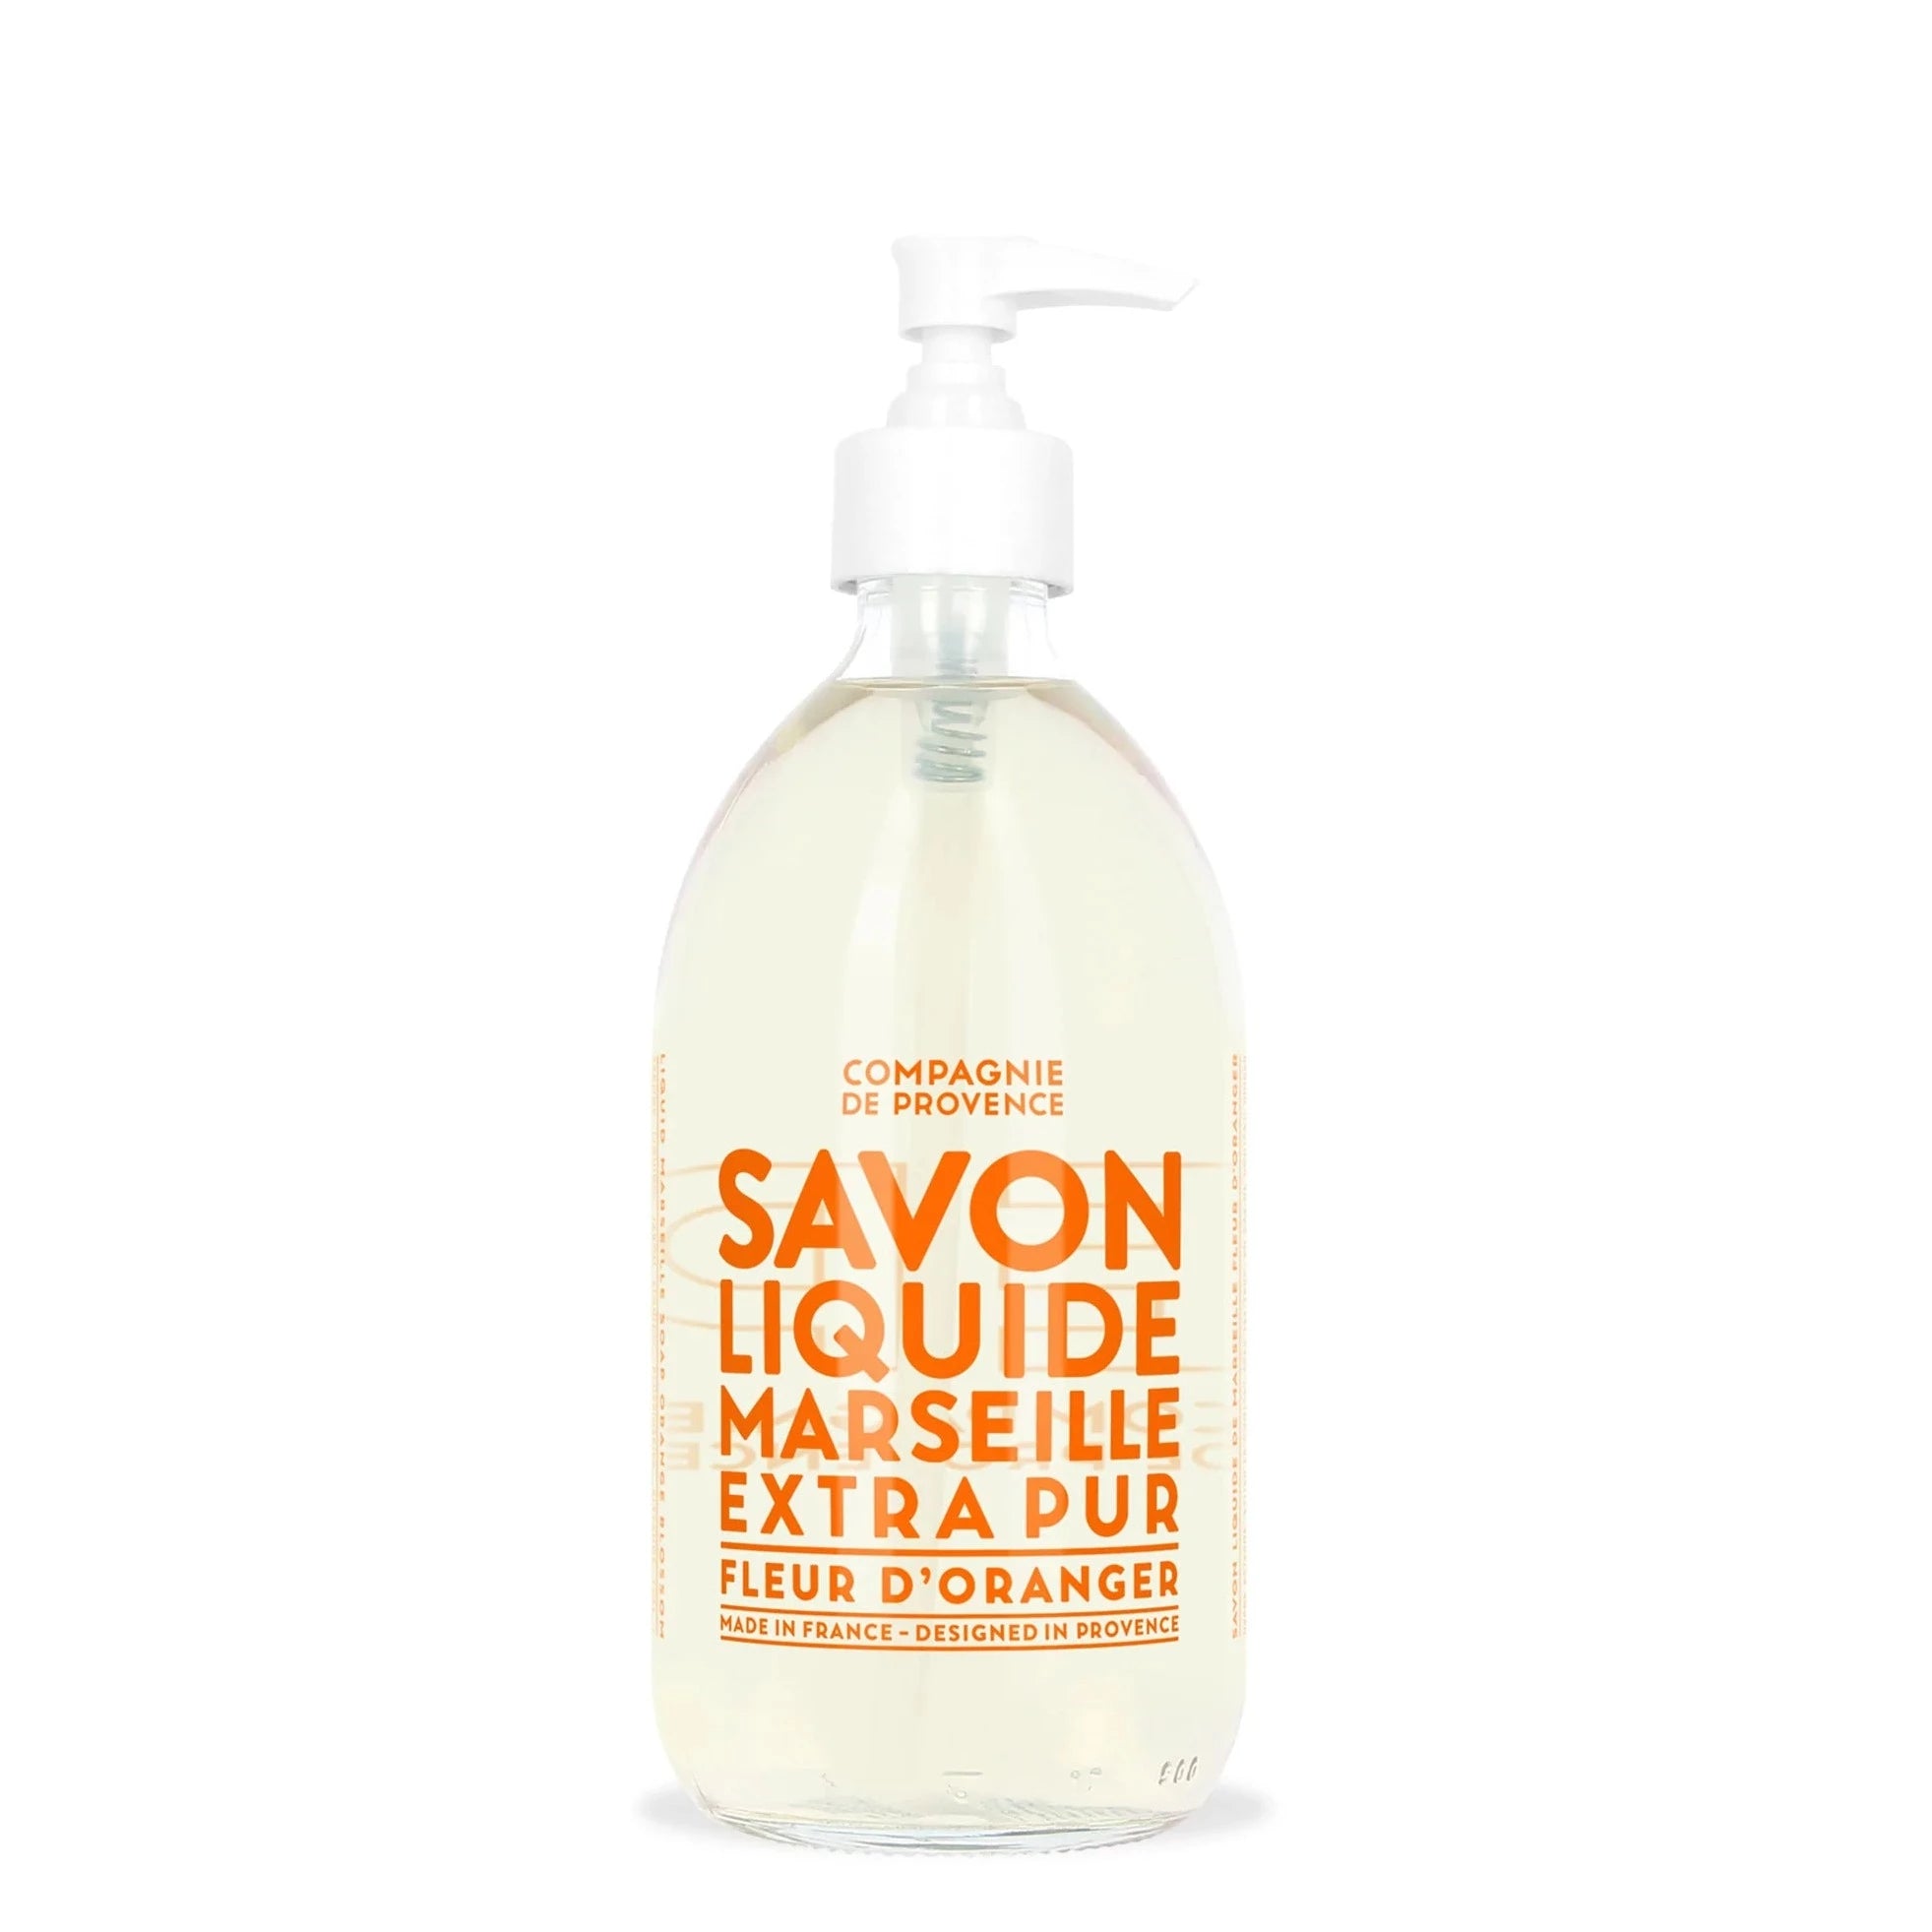 Liquid Marseille Soap - Orange Blossom